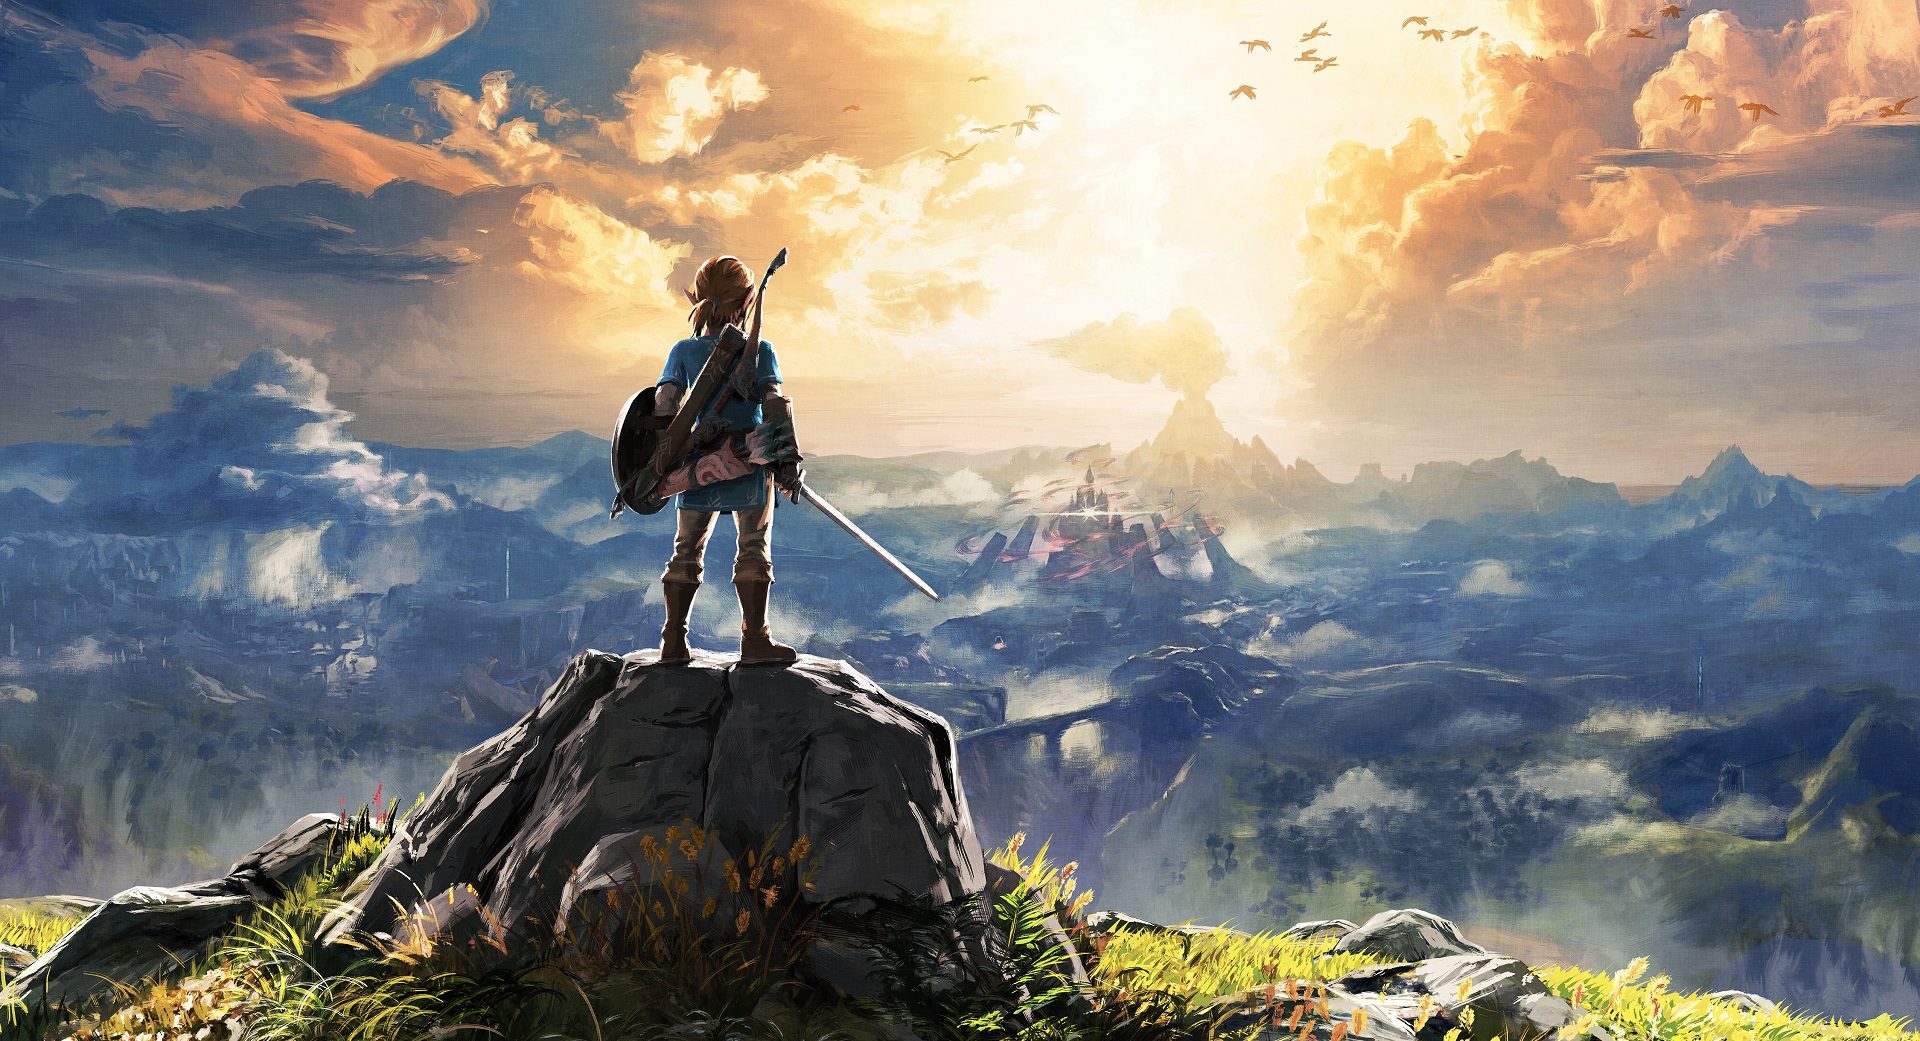 Huyền thoại Legend of Zelda sẽ xuất hiện trên nền tảng mobile?